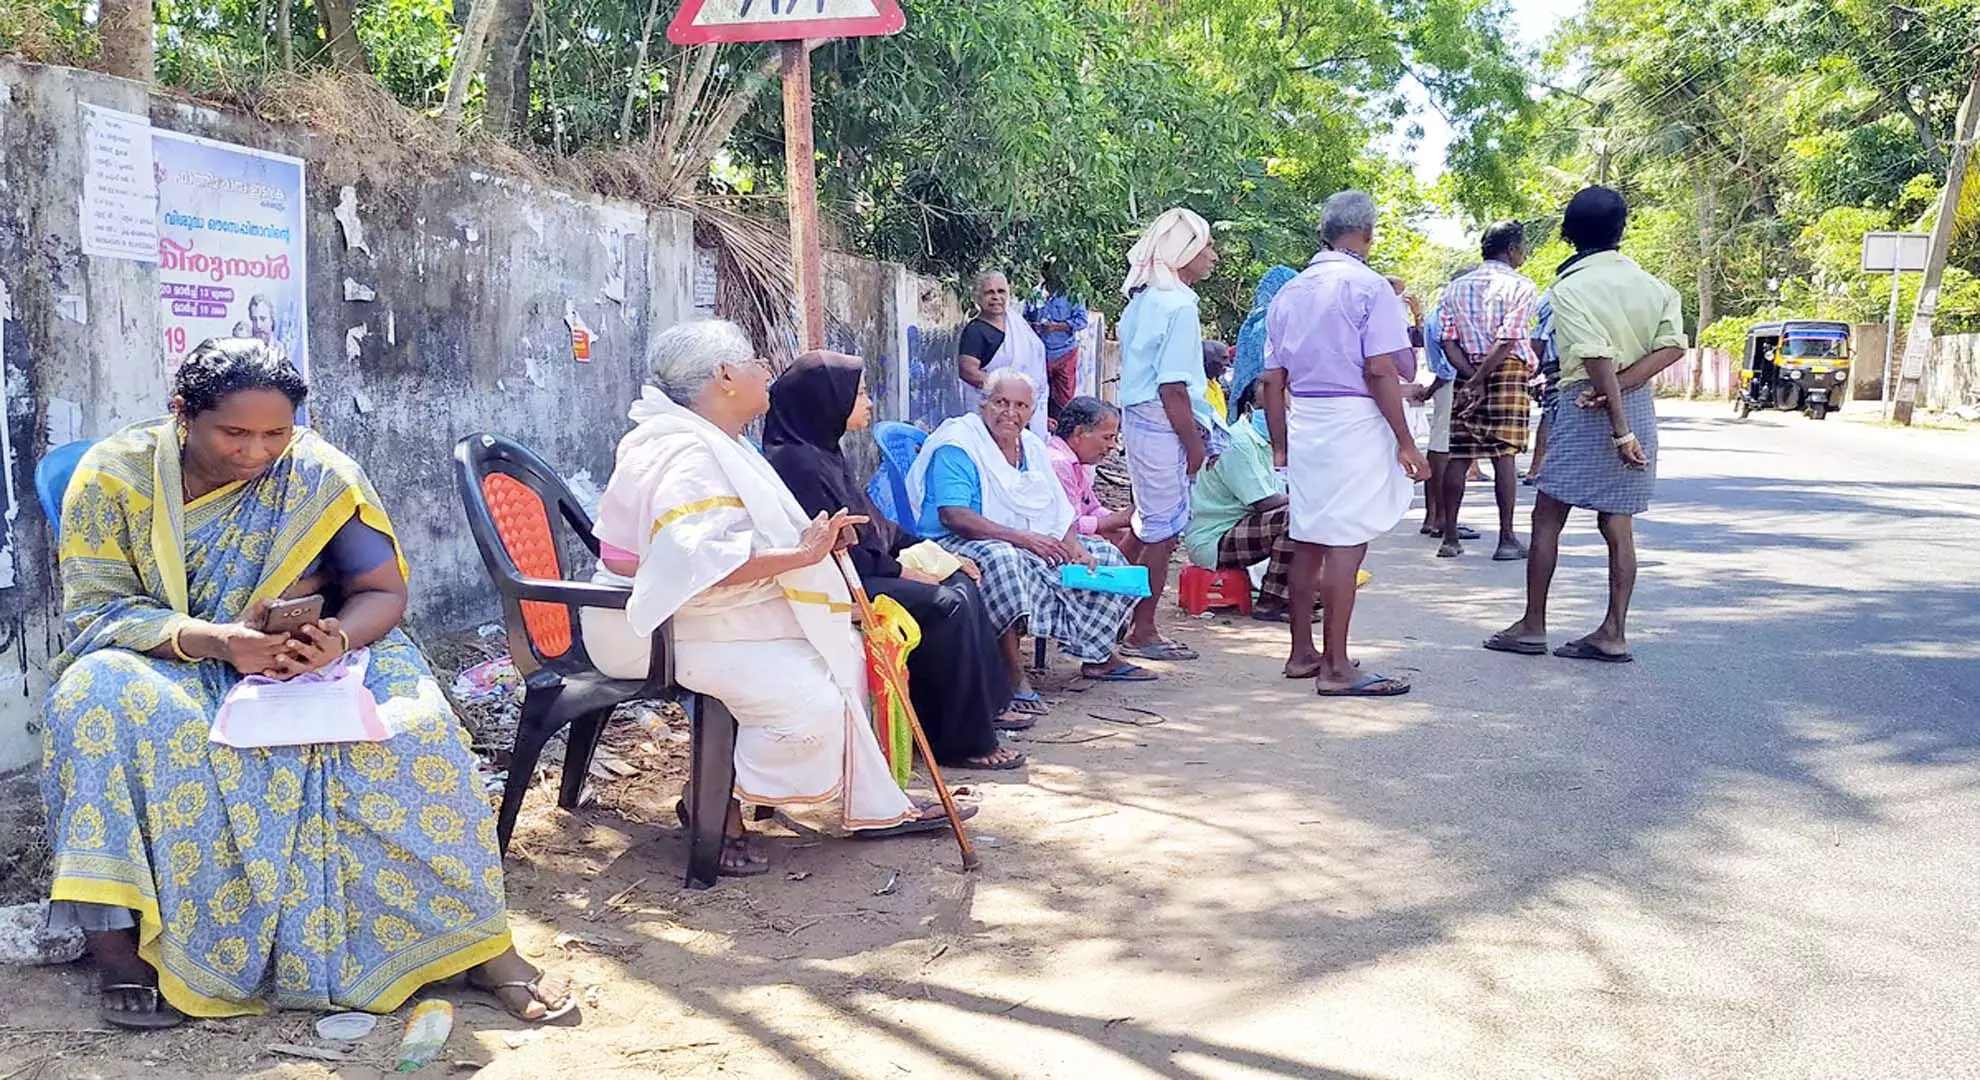 कल्याण पेंशन अधिकार नहीं, सिर्फ सहायता है: केरल सरकार HC में